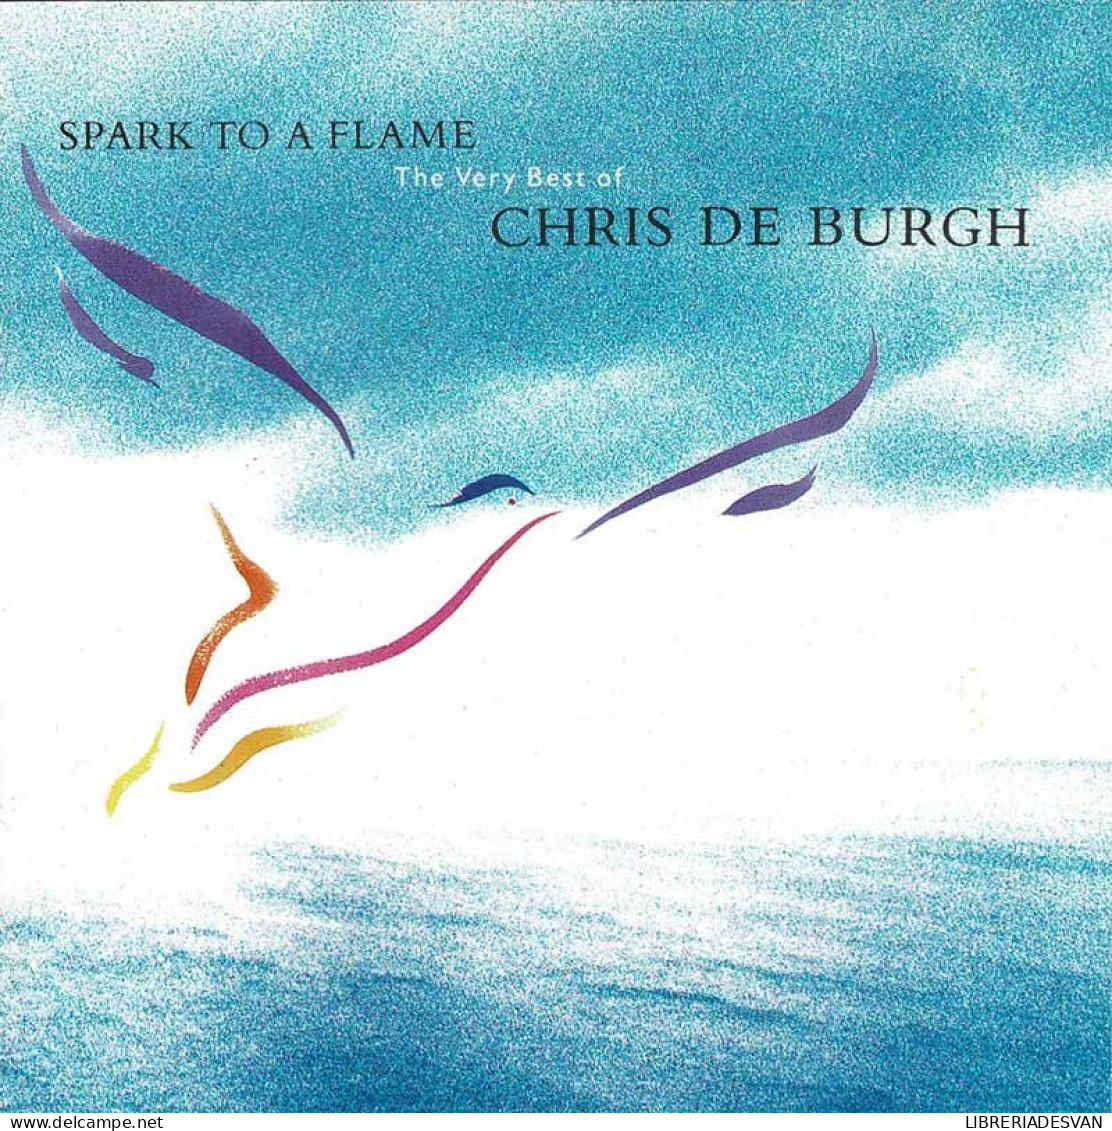 Chris De Burgh - Spark To A Flame (The Very Best Of Chris De Burgh). CD - Disco, Pop